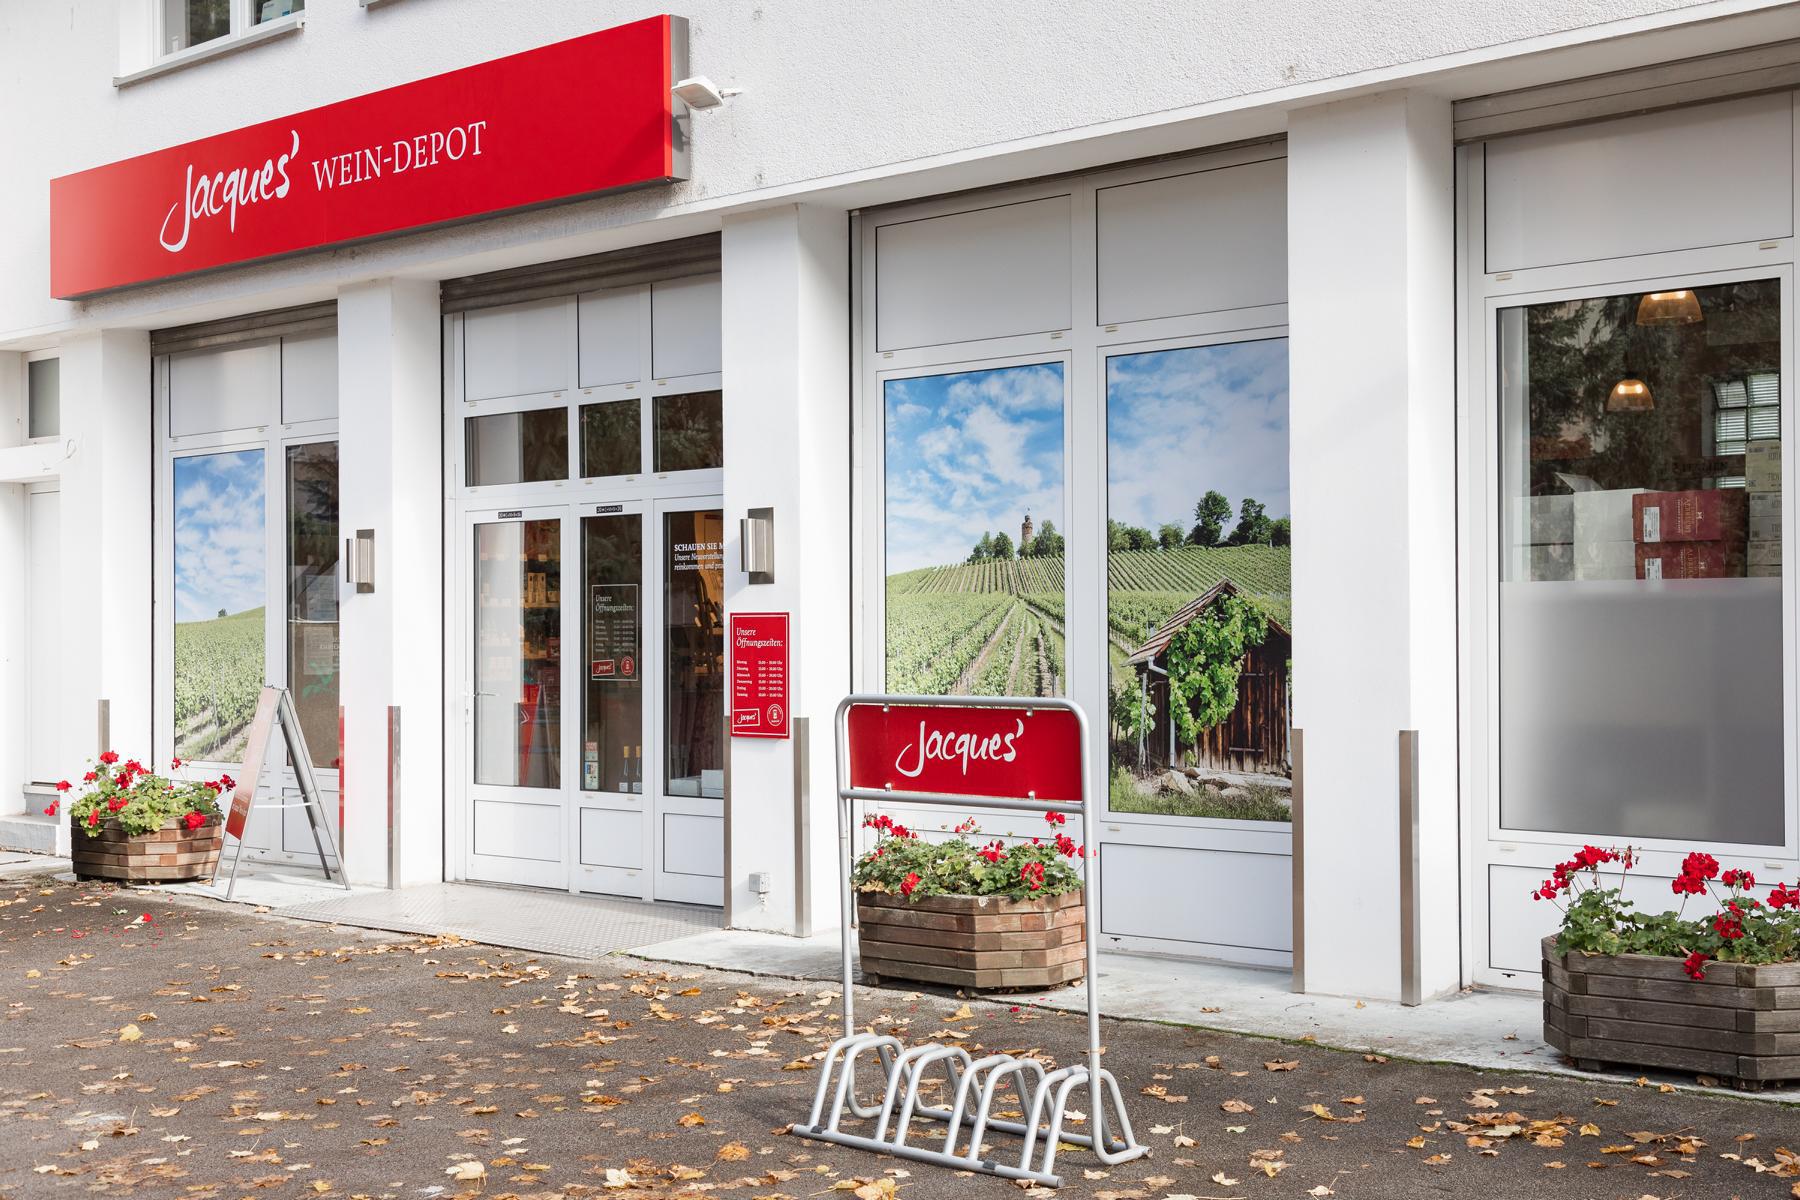 Bilder Jacques’ Wein-Depot Recklinghausen